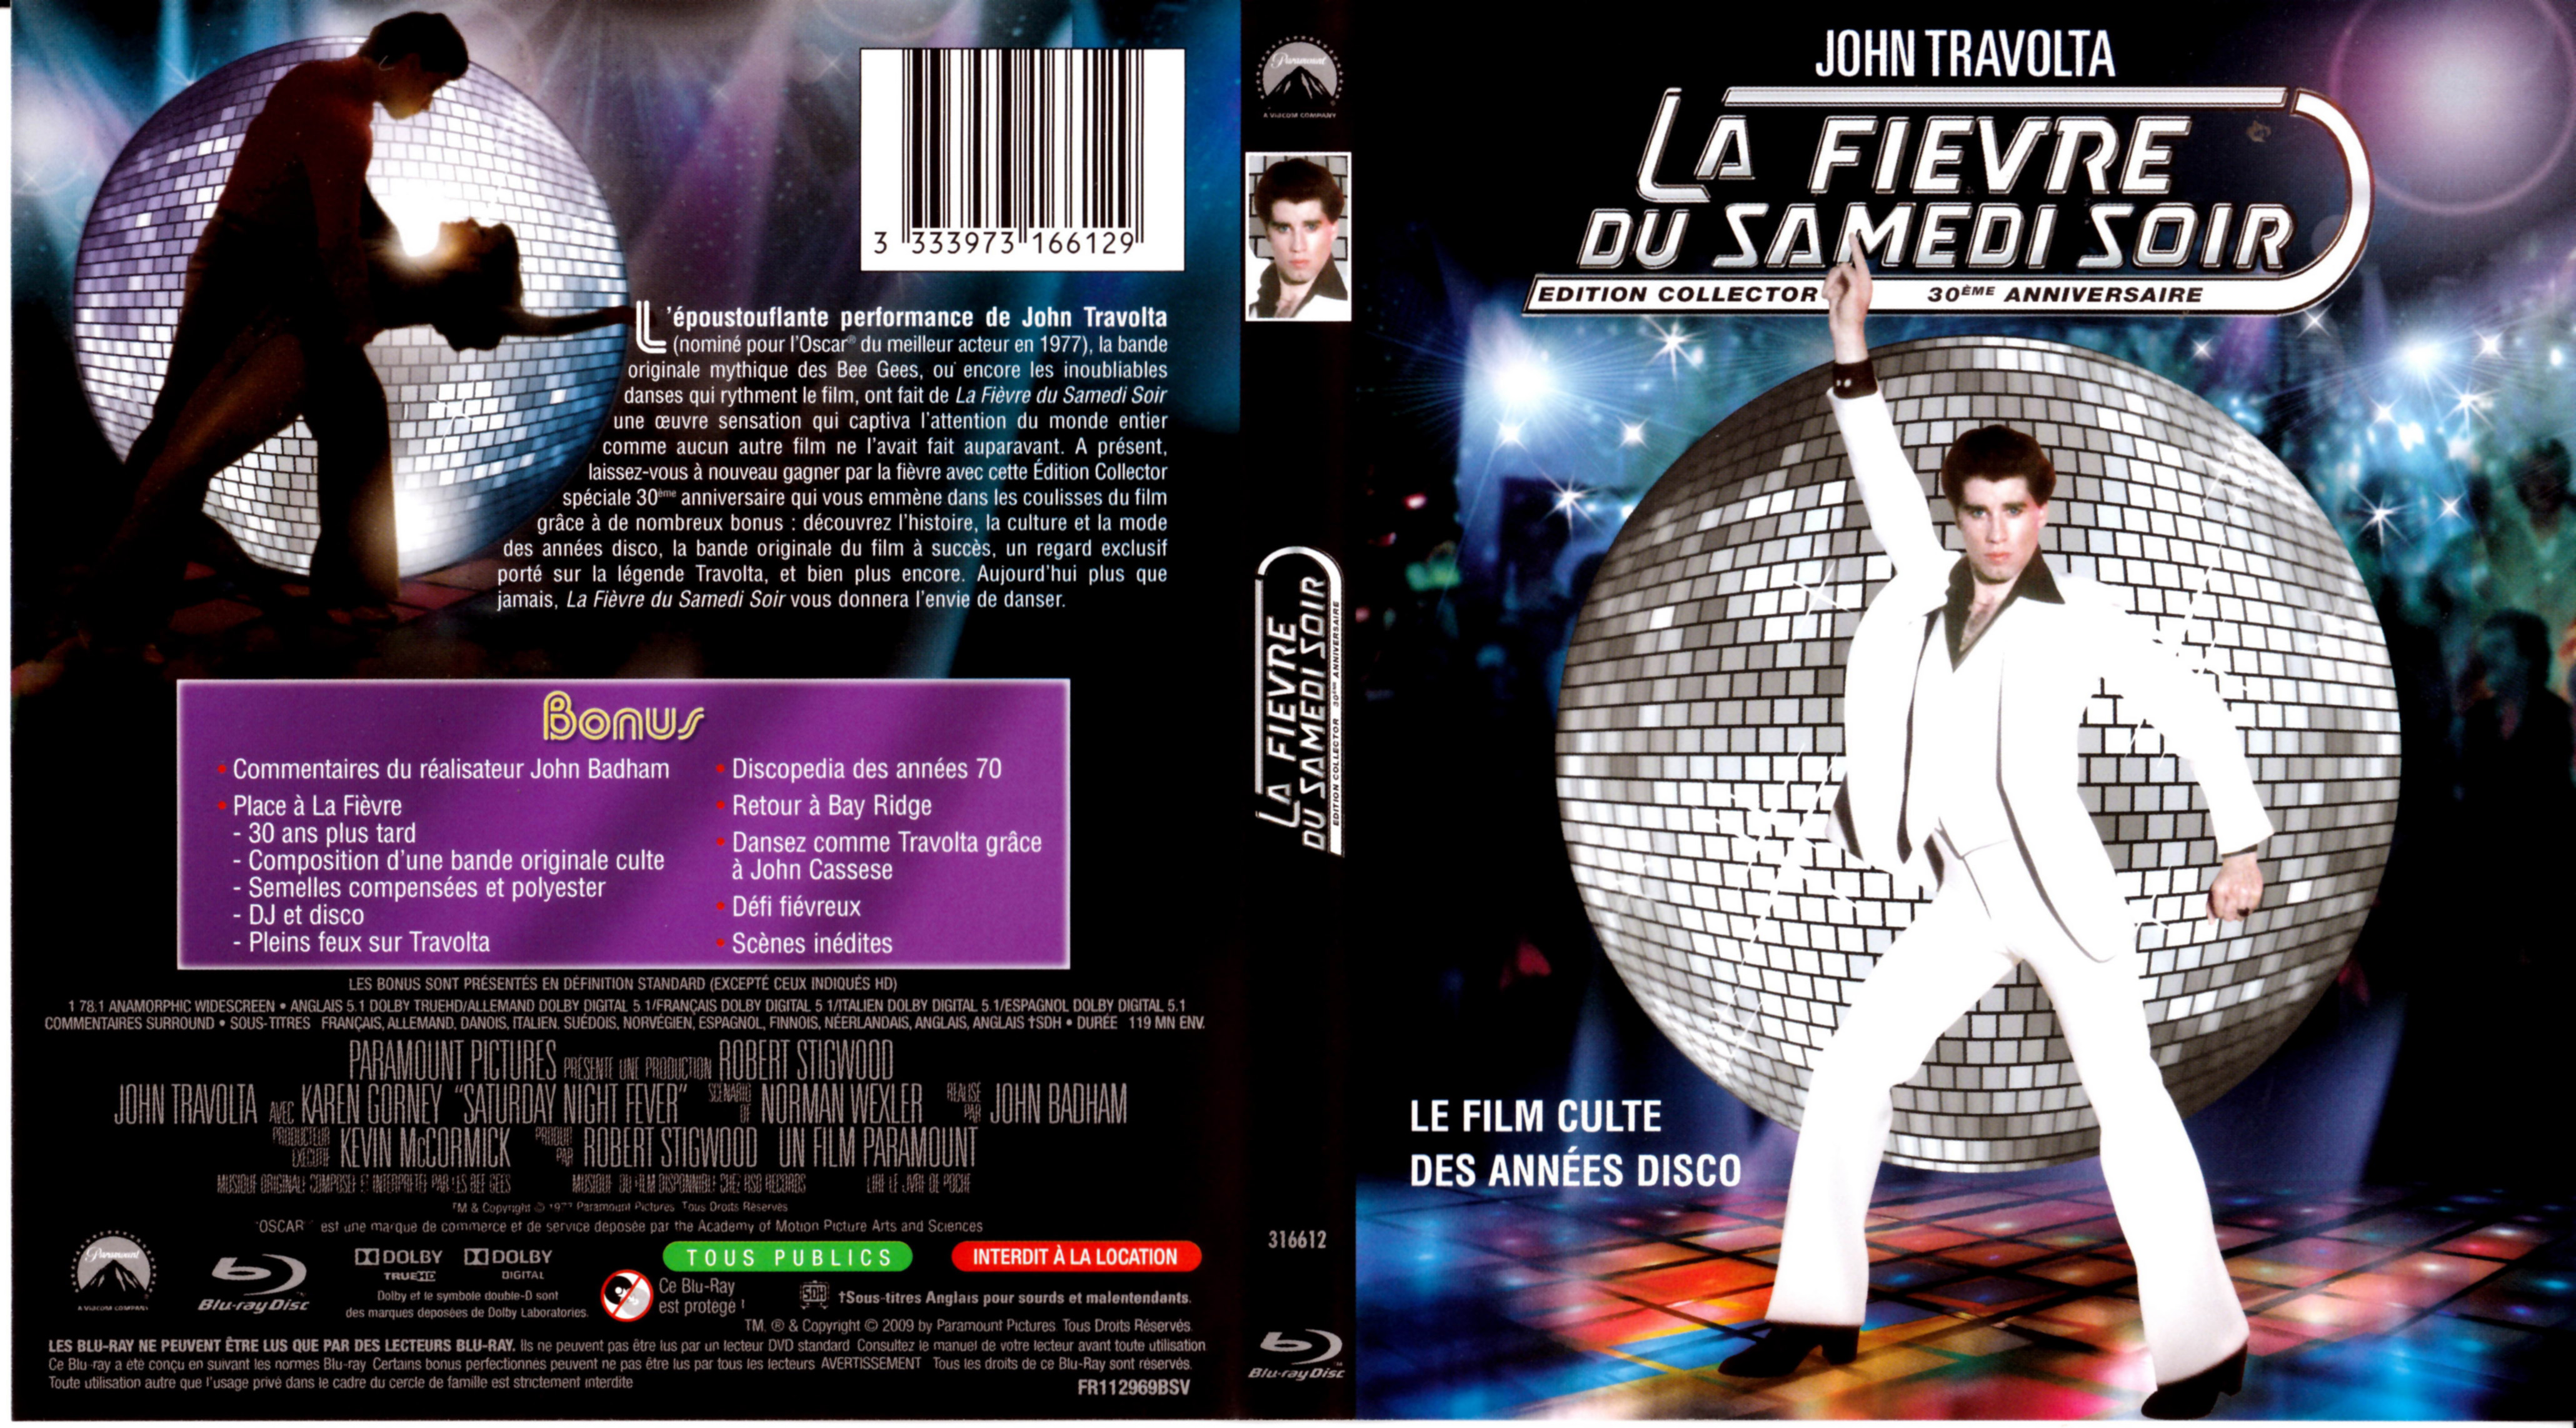 Jaquette DVD La fievre du samedi soir (BLU-RAY)